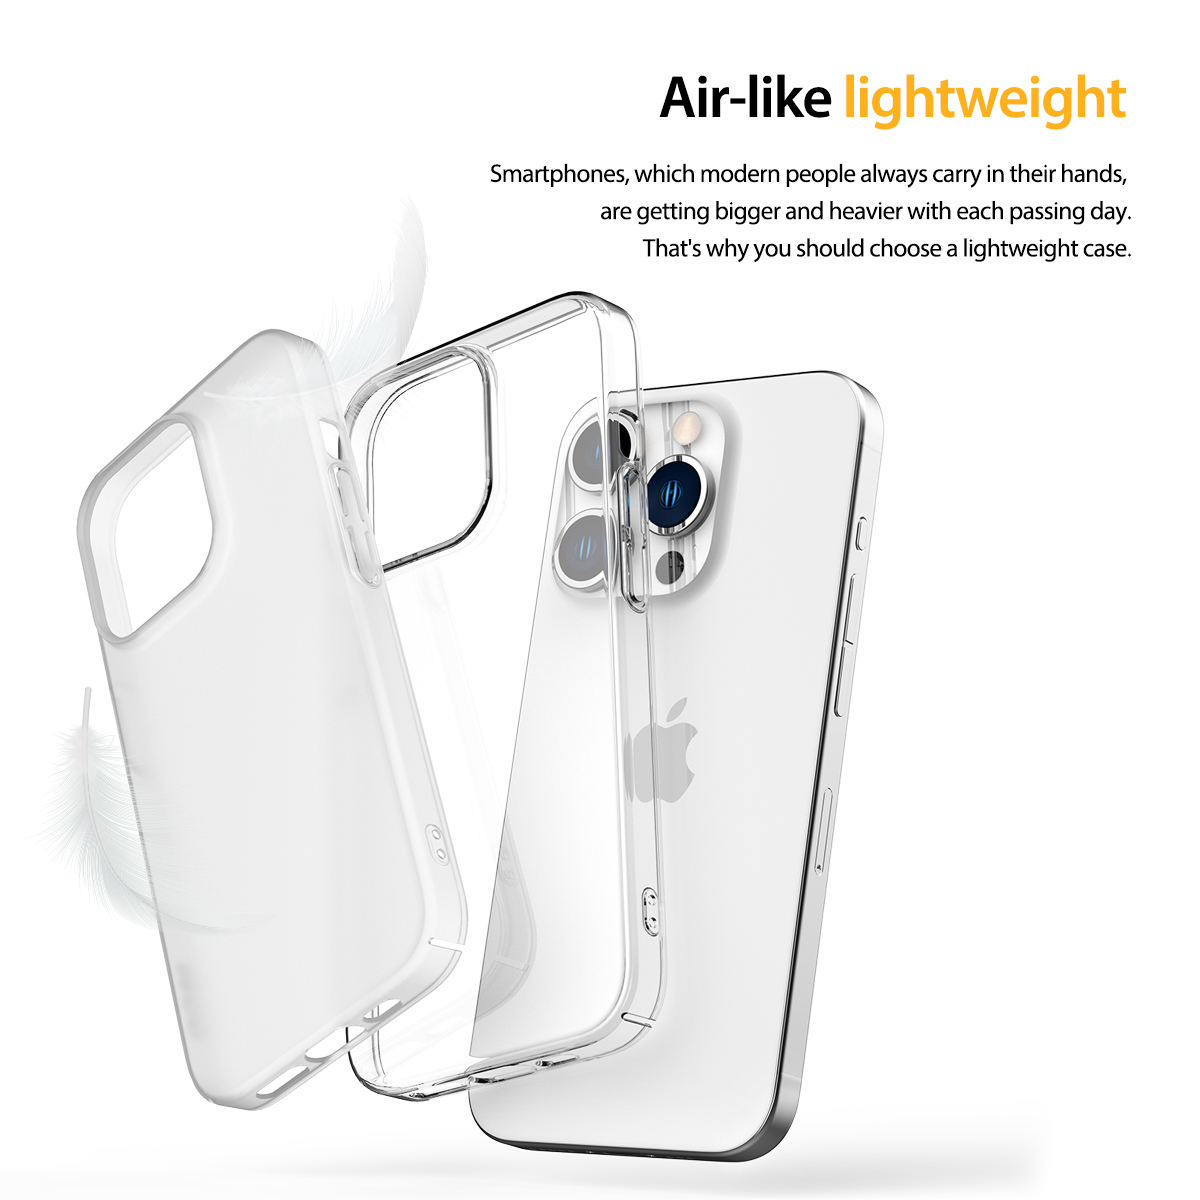 Araree รุ่น Nukin - เคส iPhone 15 Pro - สี Clear